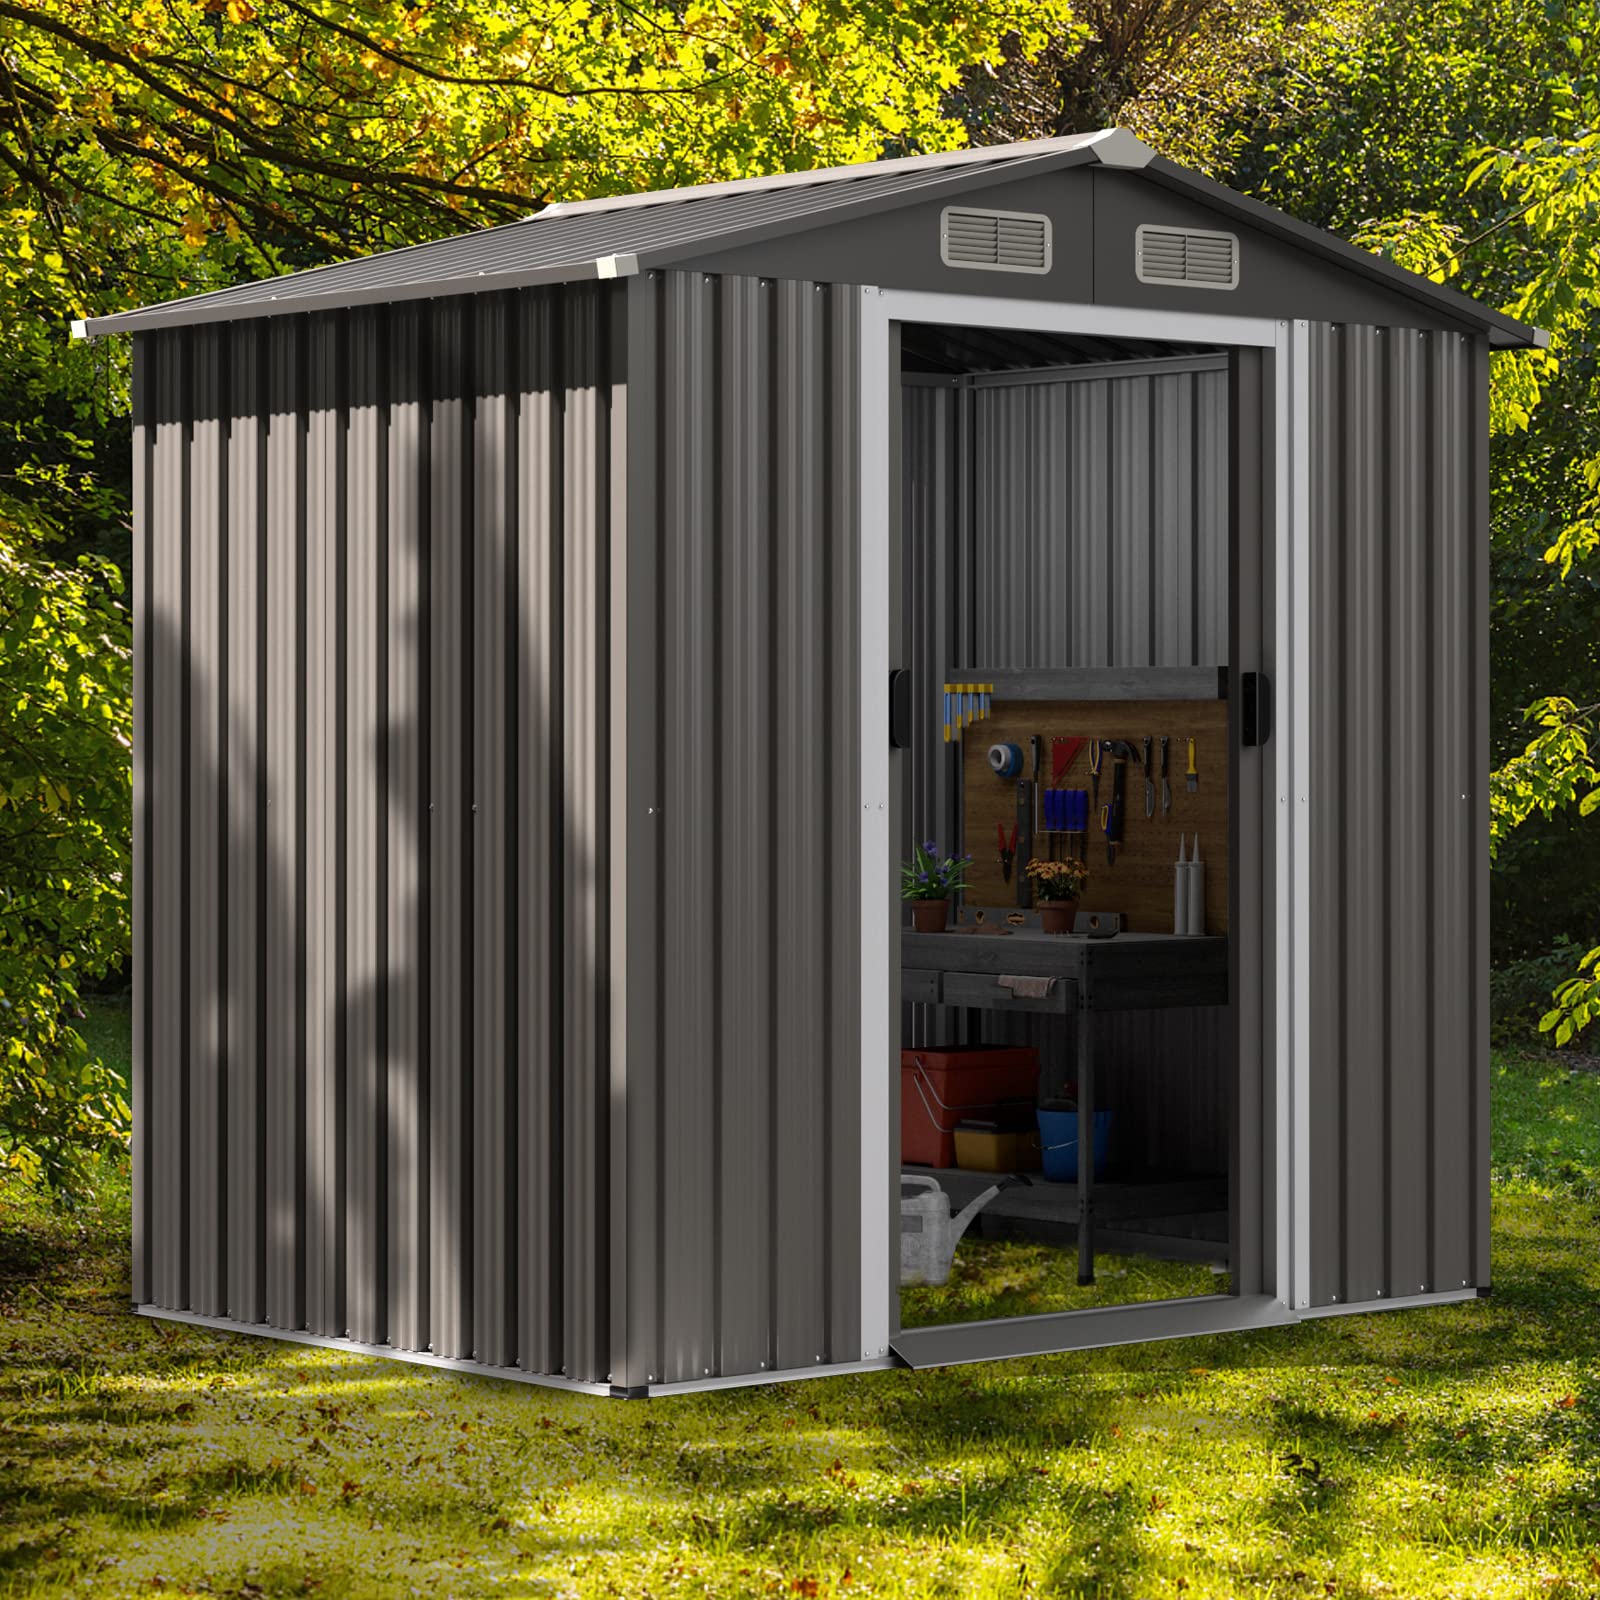 Giantex Outdoor Storage Shed 6 x 4 FT, Double Sliding Door